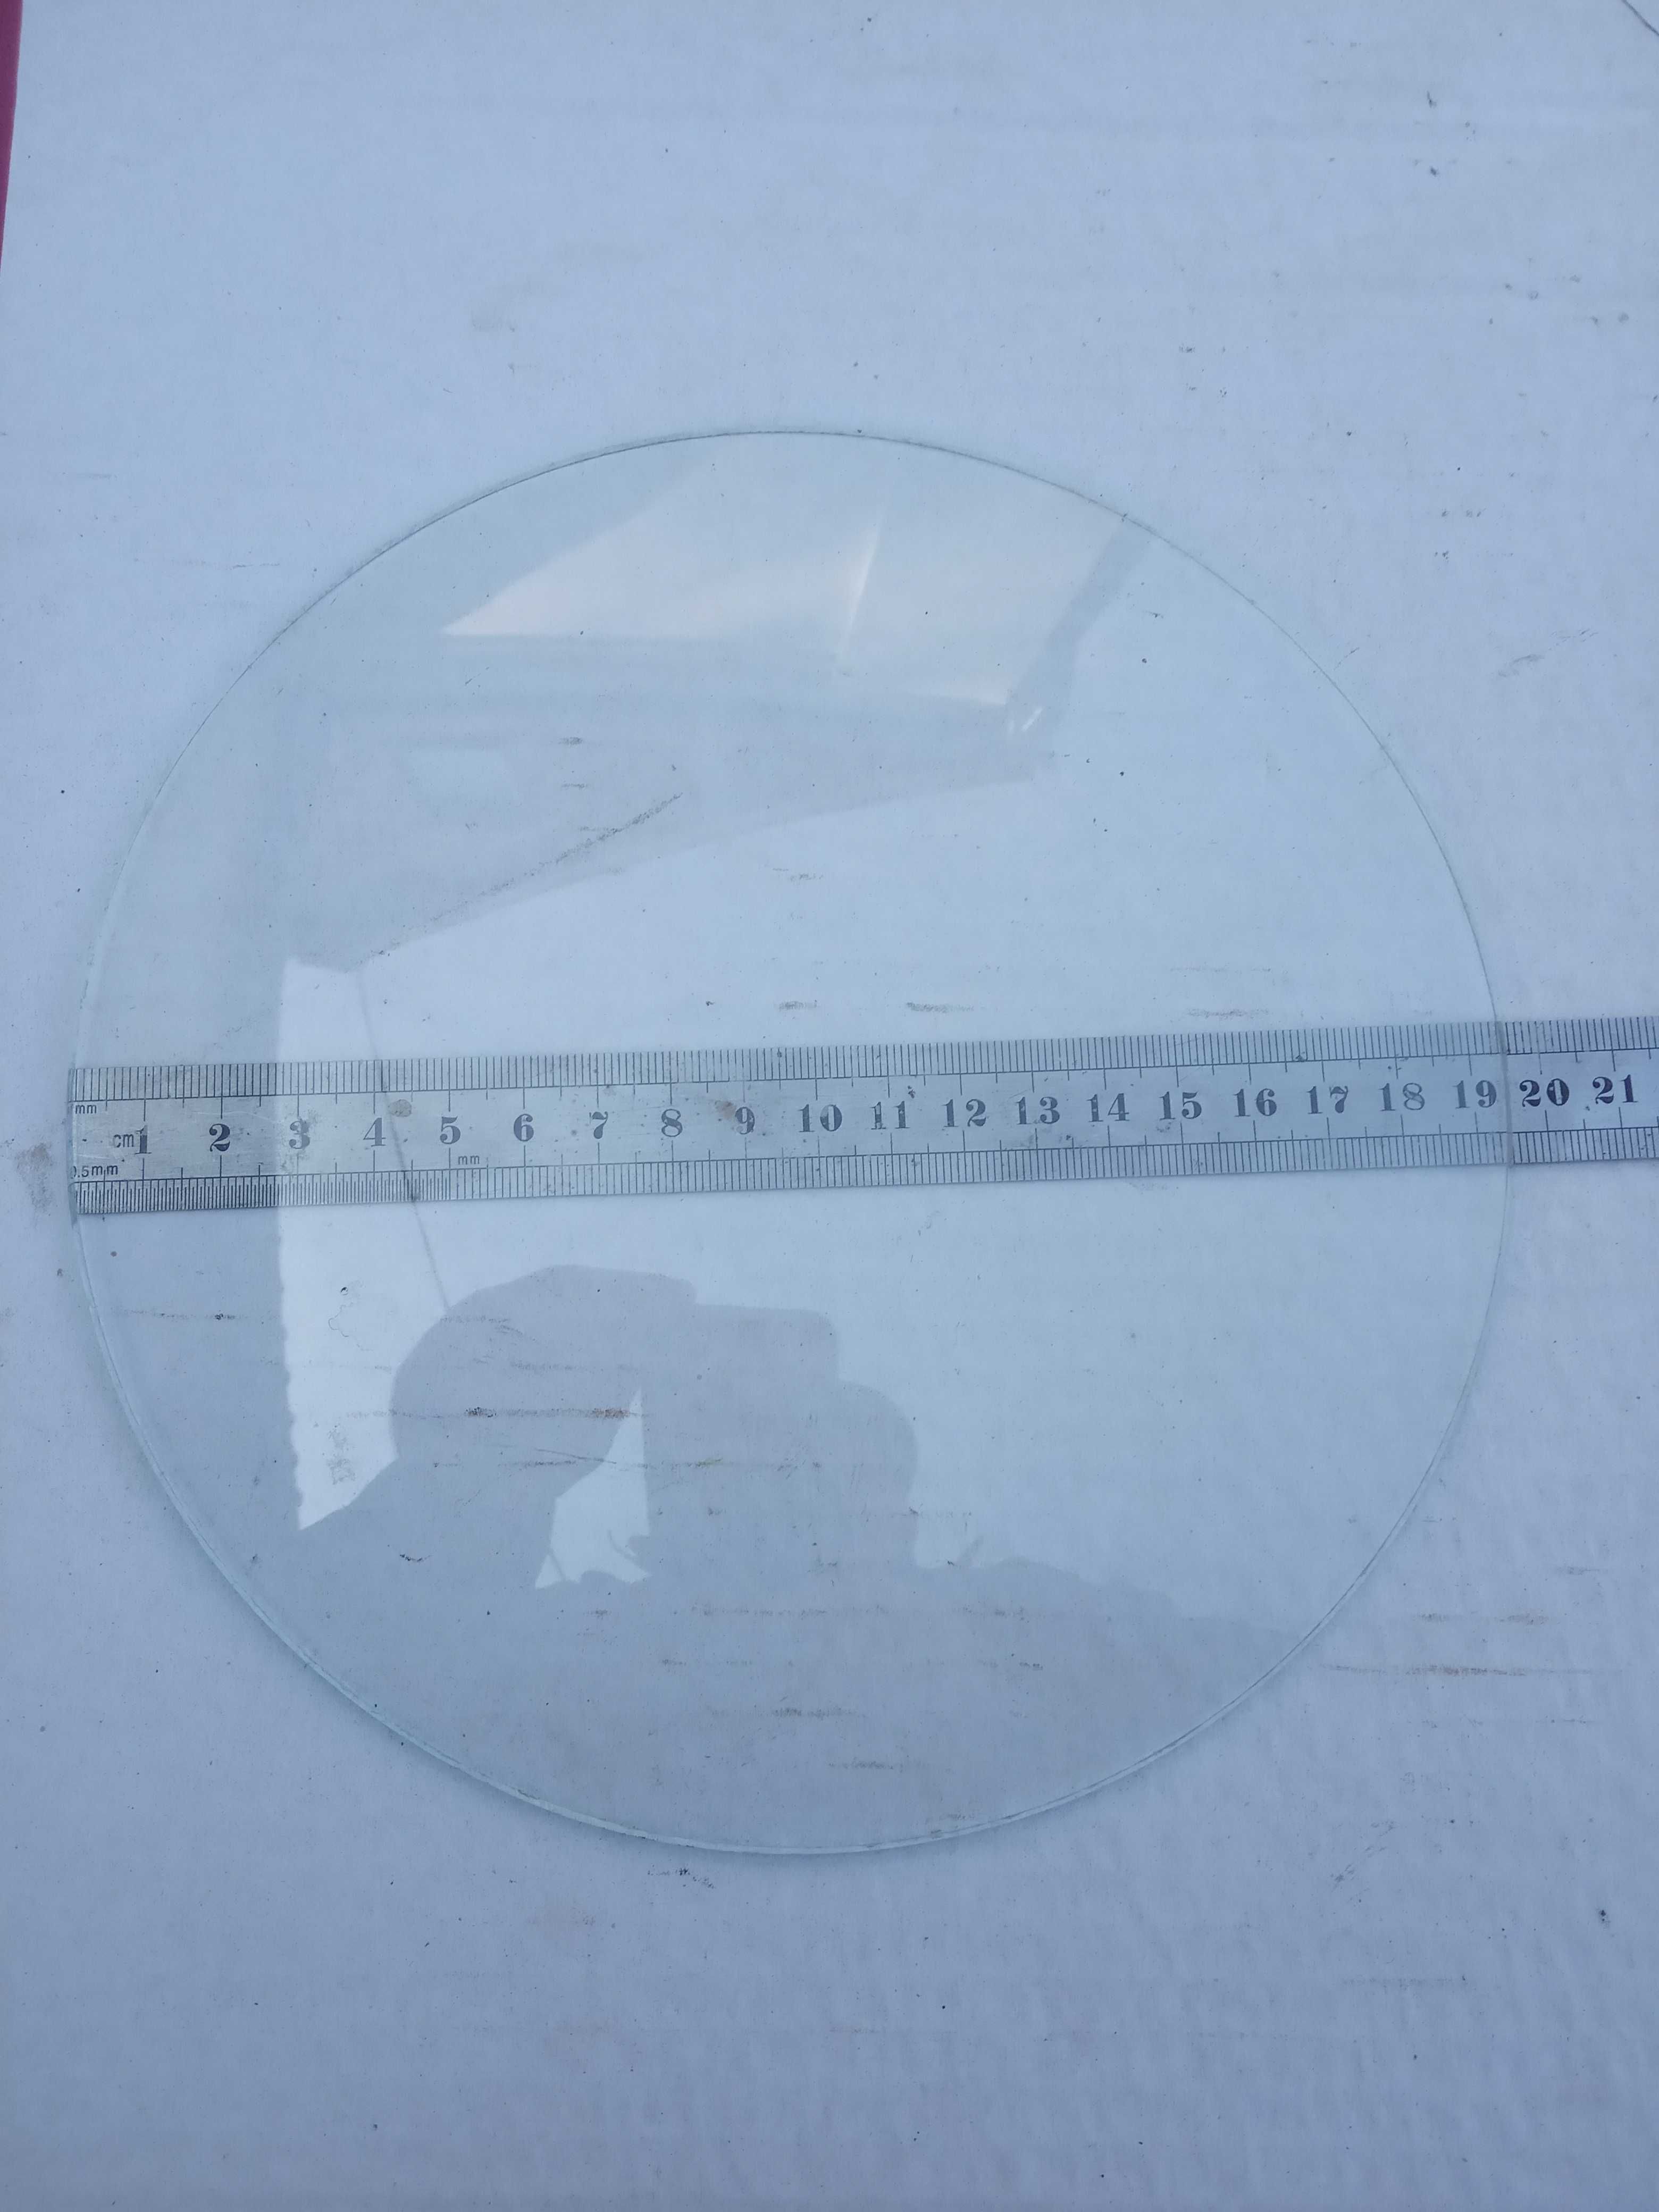 Стекло выпуклое диаметр -195 мм на настенные часы в хорошем состоянии